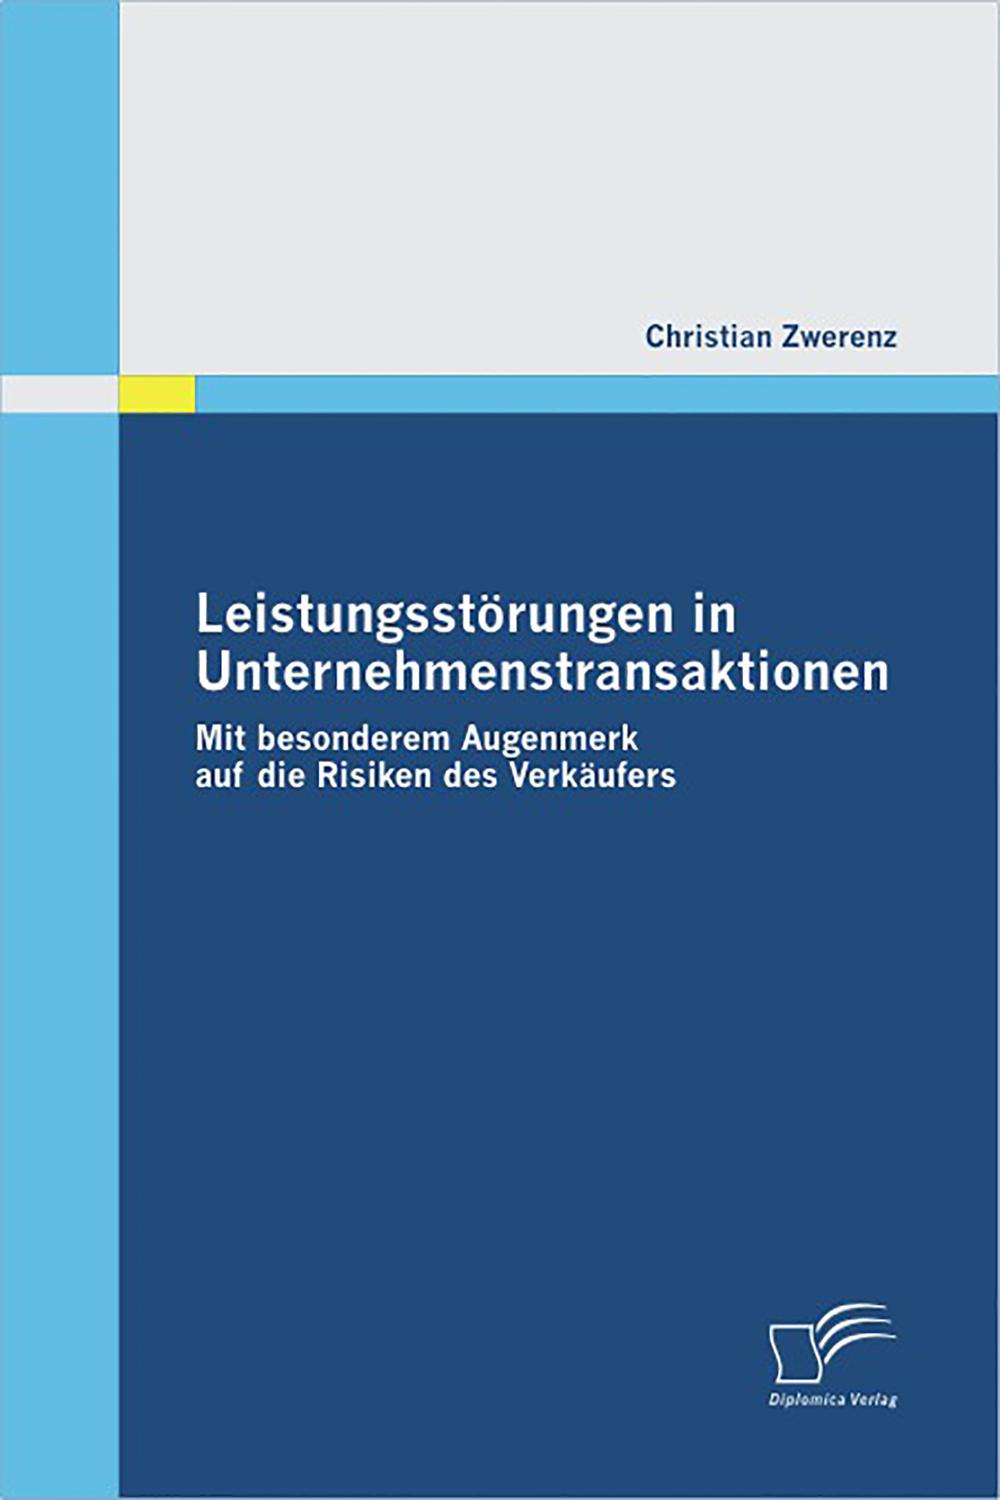 Leistungsstörungen in Unternehmenstransaktionen - Christian Zwerenz